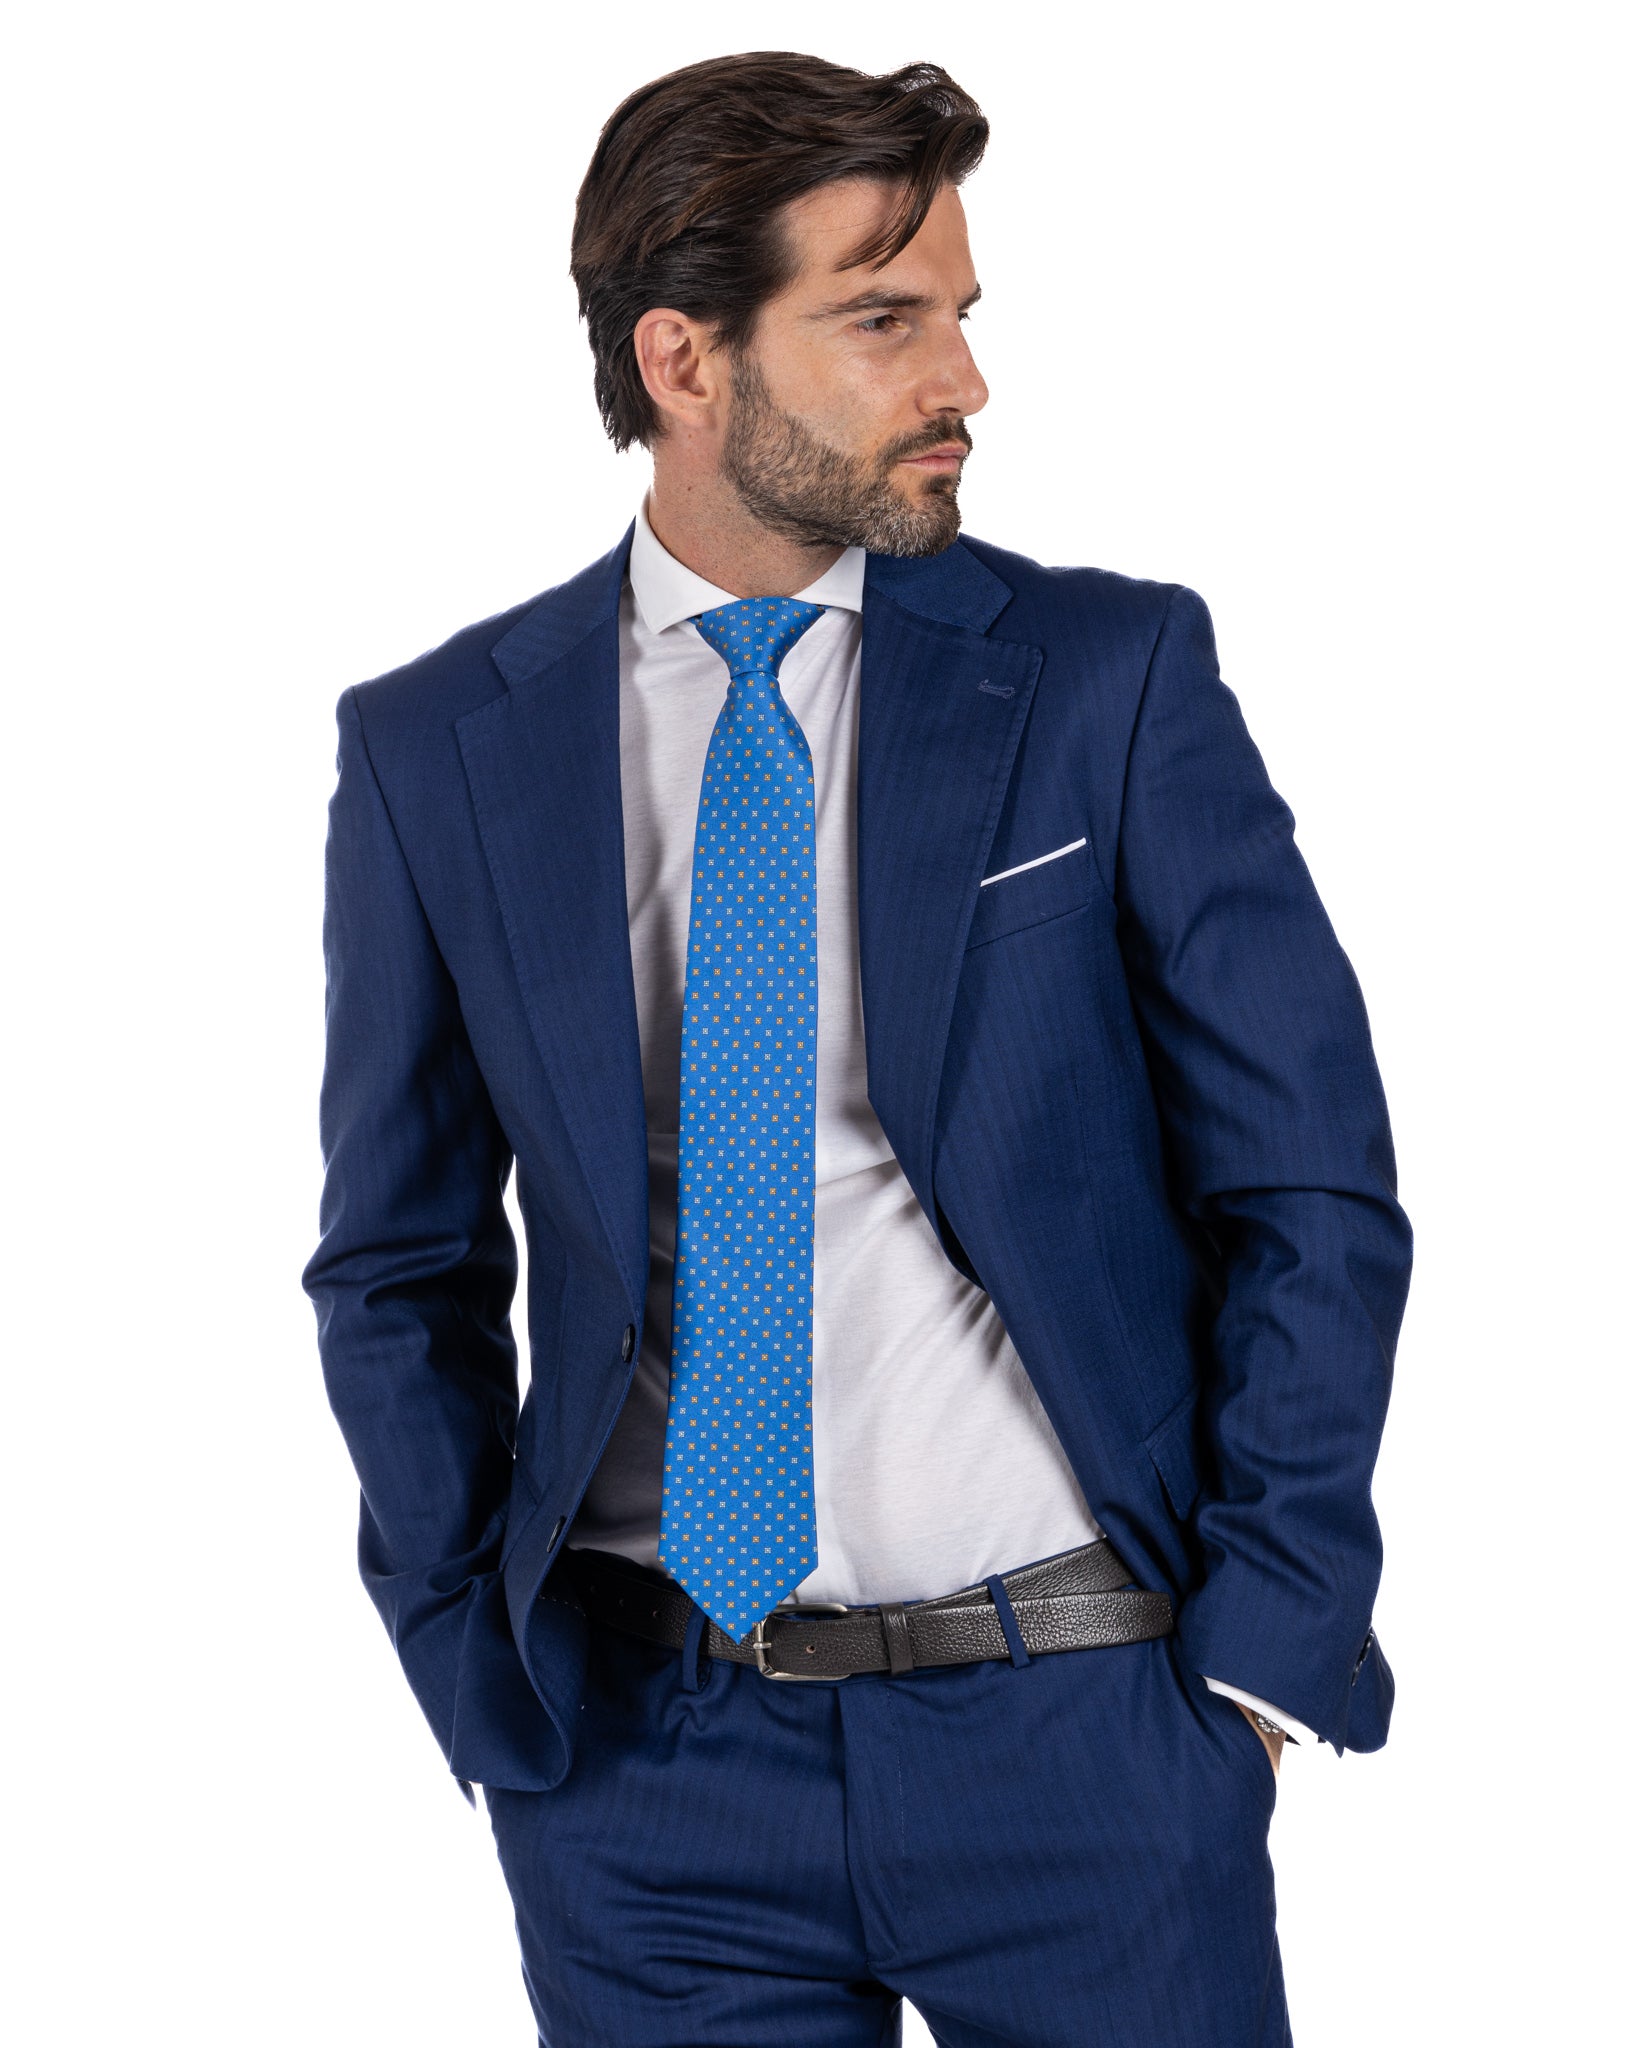 Paris - blue solaro single-breasted suit